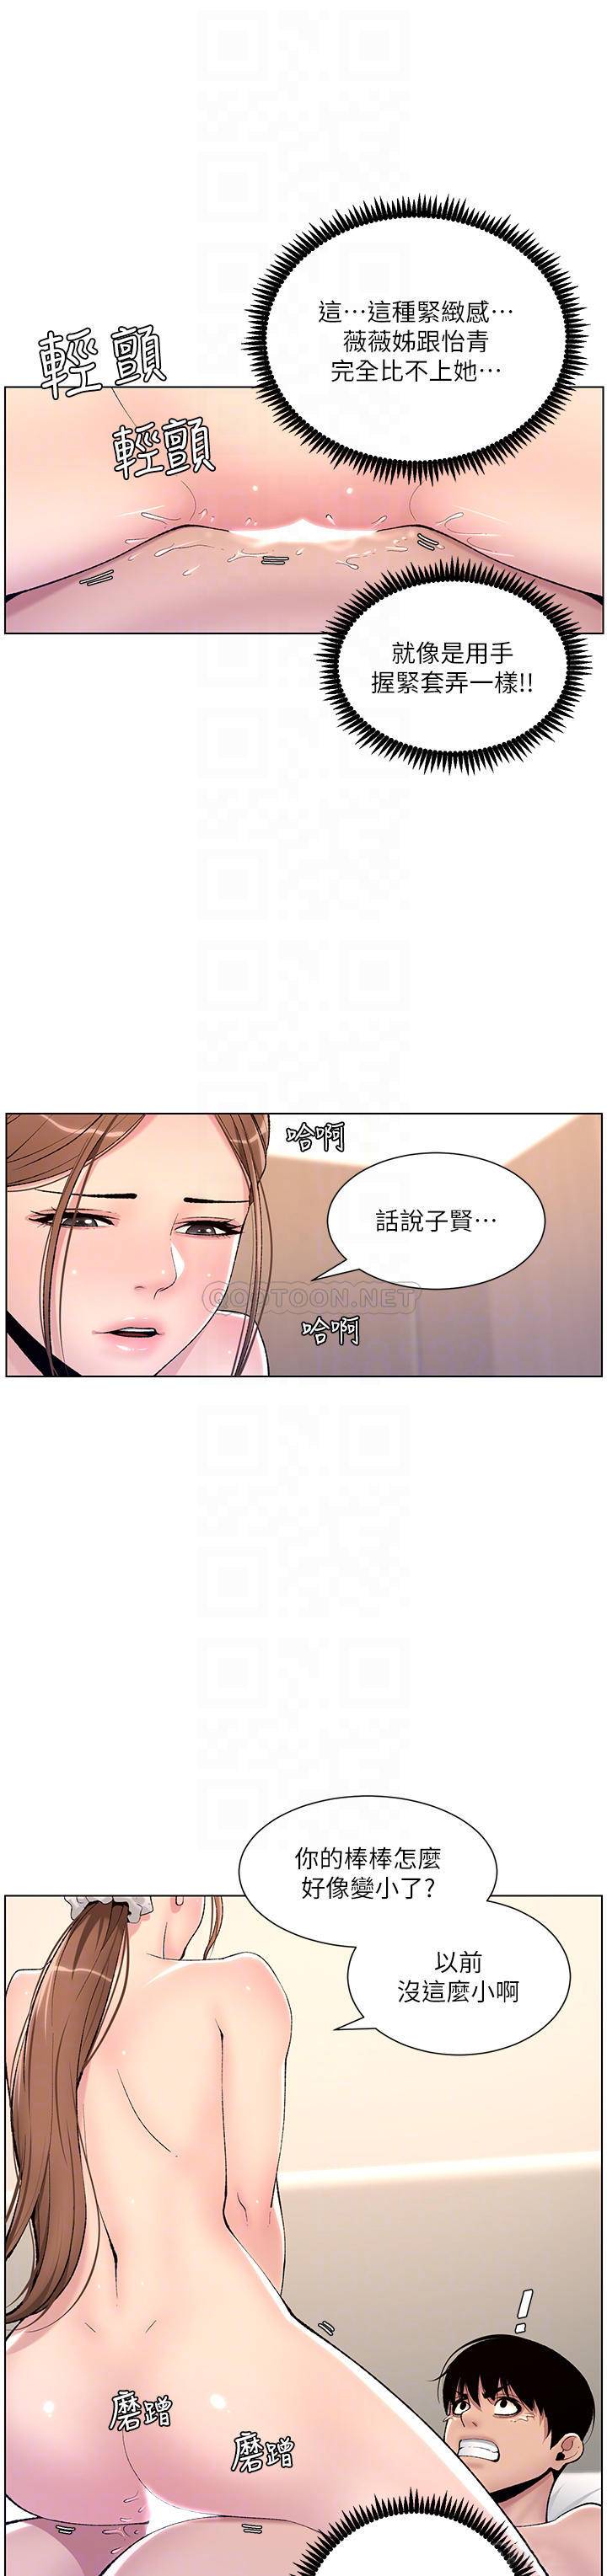 韩国污漫画 帝王App 第16话 你要当我的按摩棒吗? 14